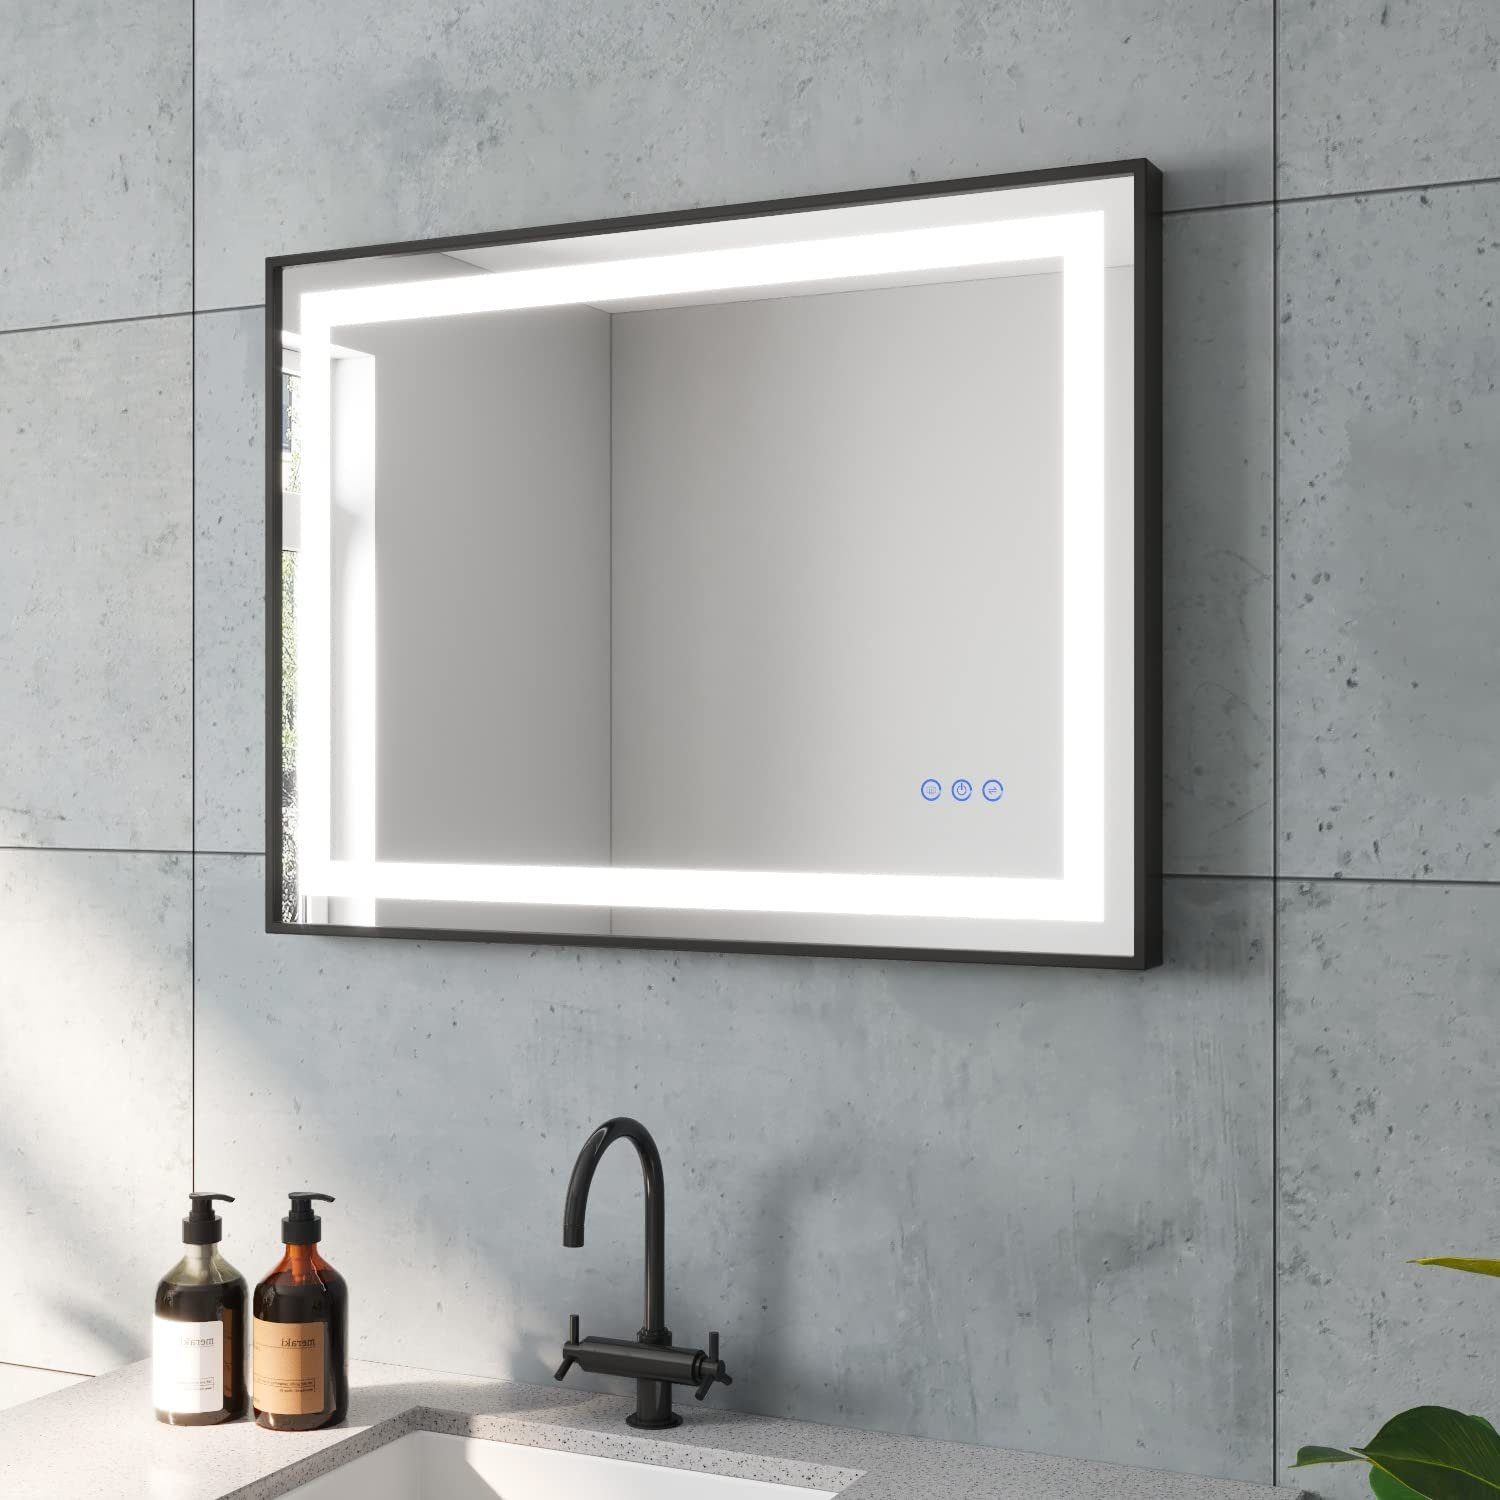 AQUABATOS Badspiegel LED Lichtspiegel Badezimmerspiegel mit Beleuchtung Bad Spiegel, 80x60 cm 3 Lichtfarbe Touch Beschlagfrei Dimmbar Slimline Design